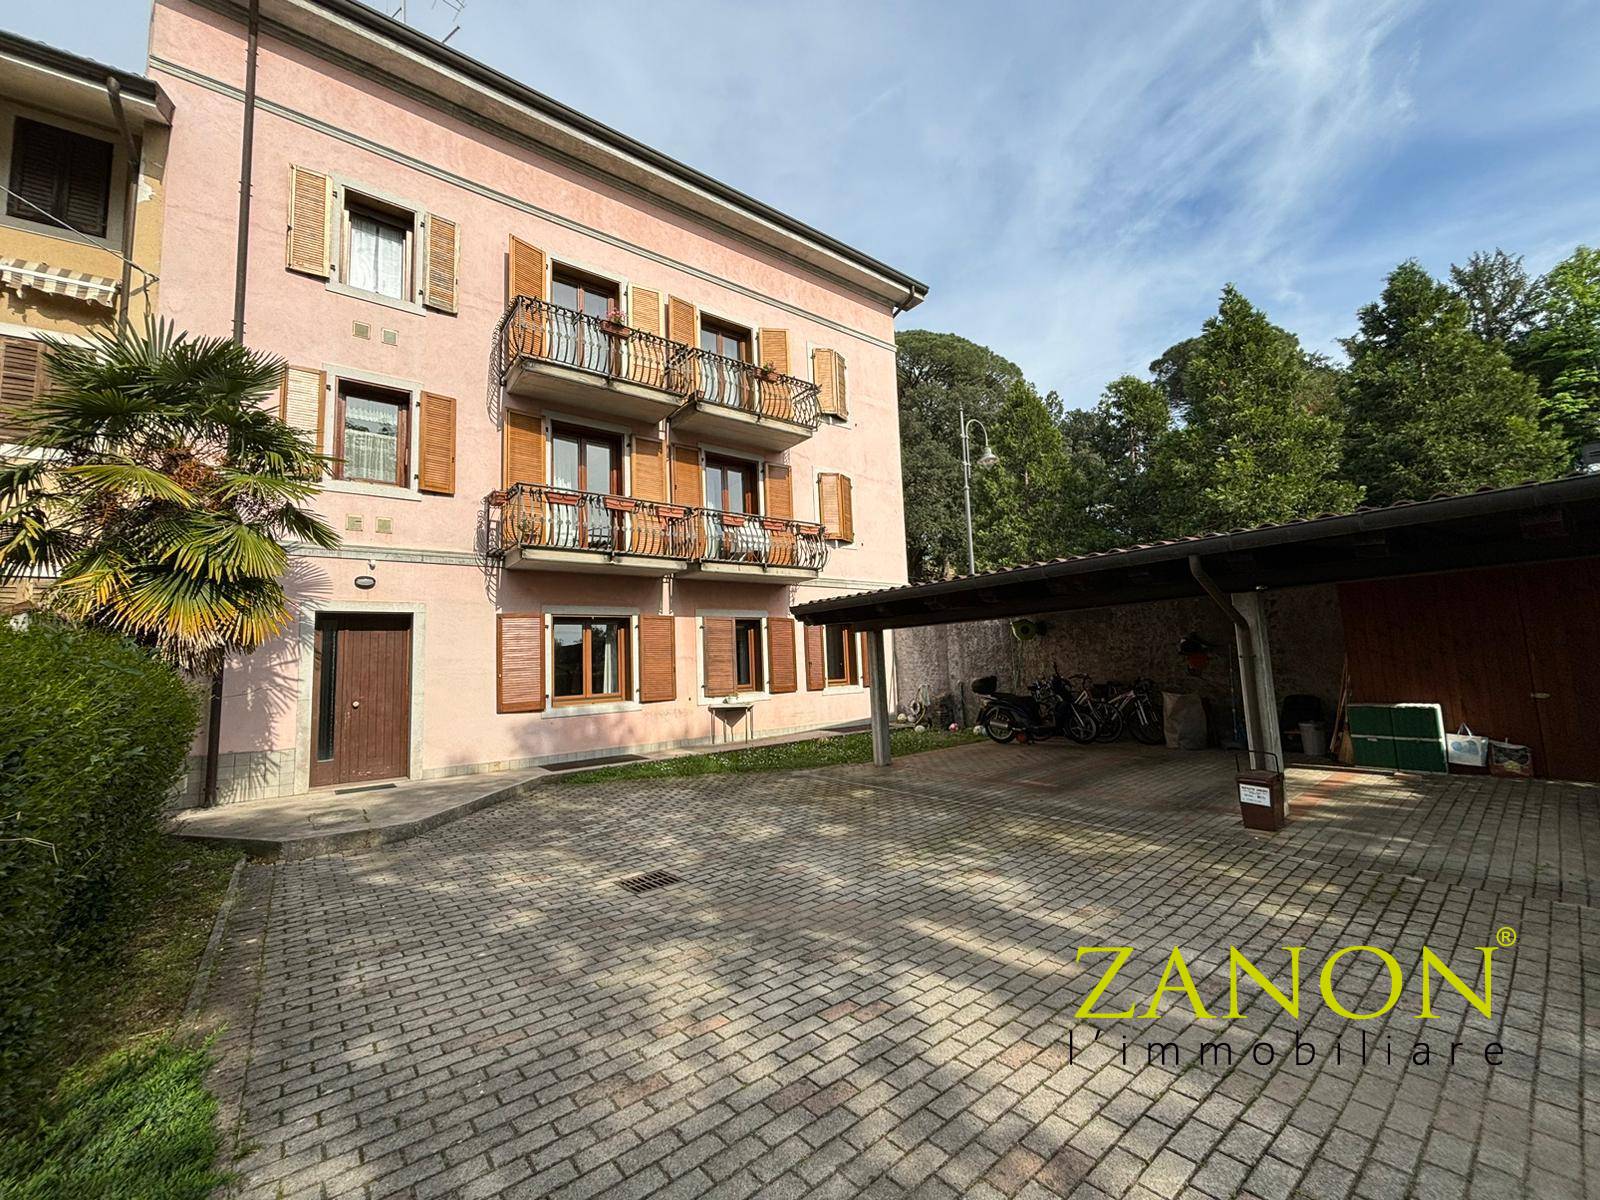 Appartamento in vendita a Gorizia, 5 locali, zona Località: Centrostorico, prezzo € 110.000 | PortaleAgenzieImmobiliari.it